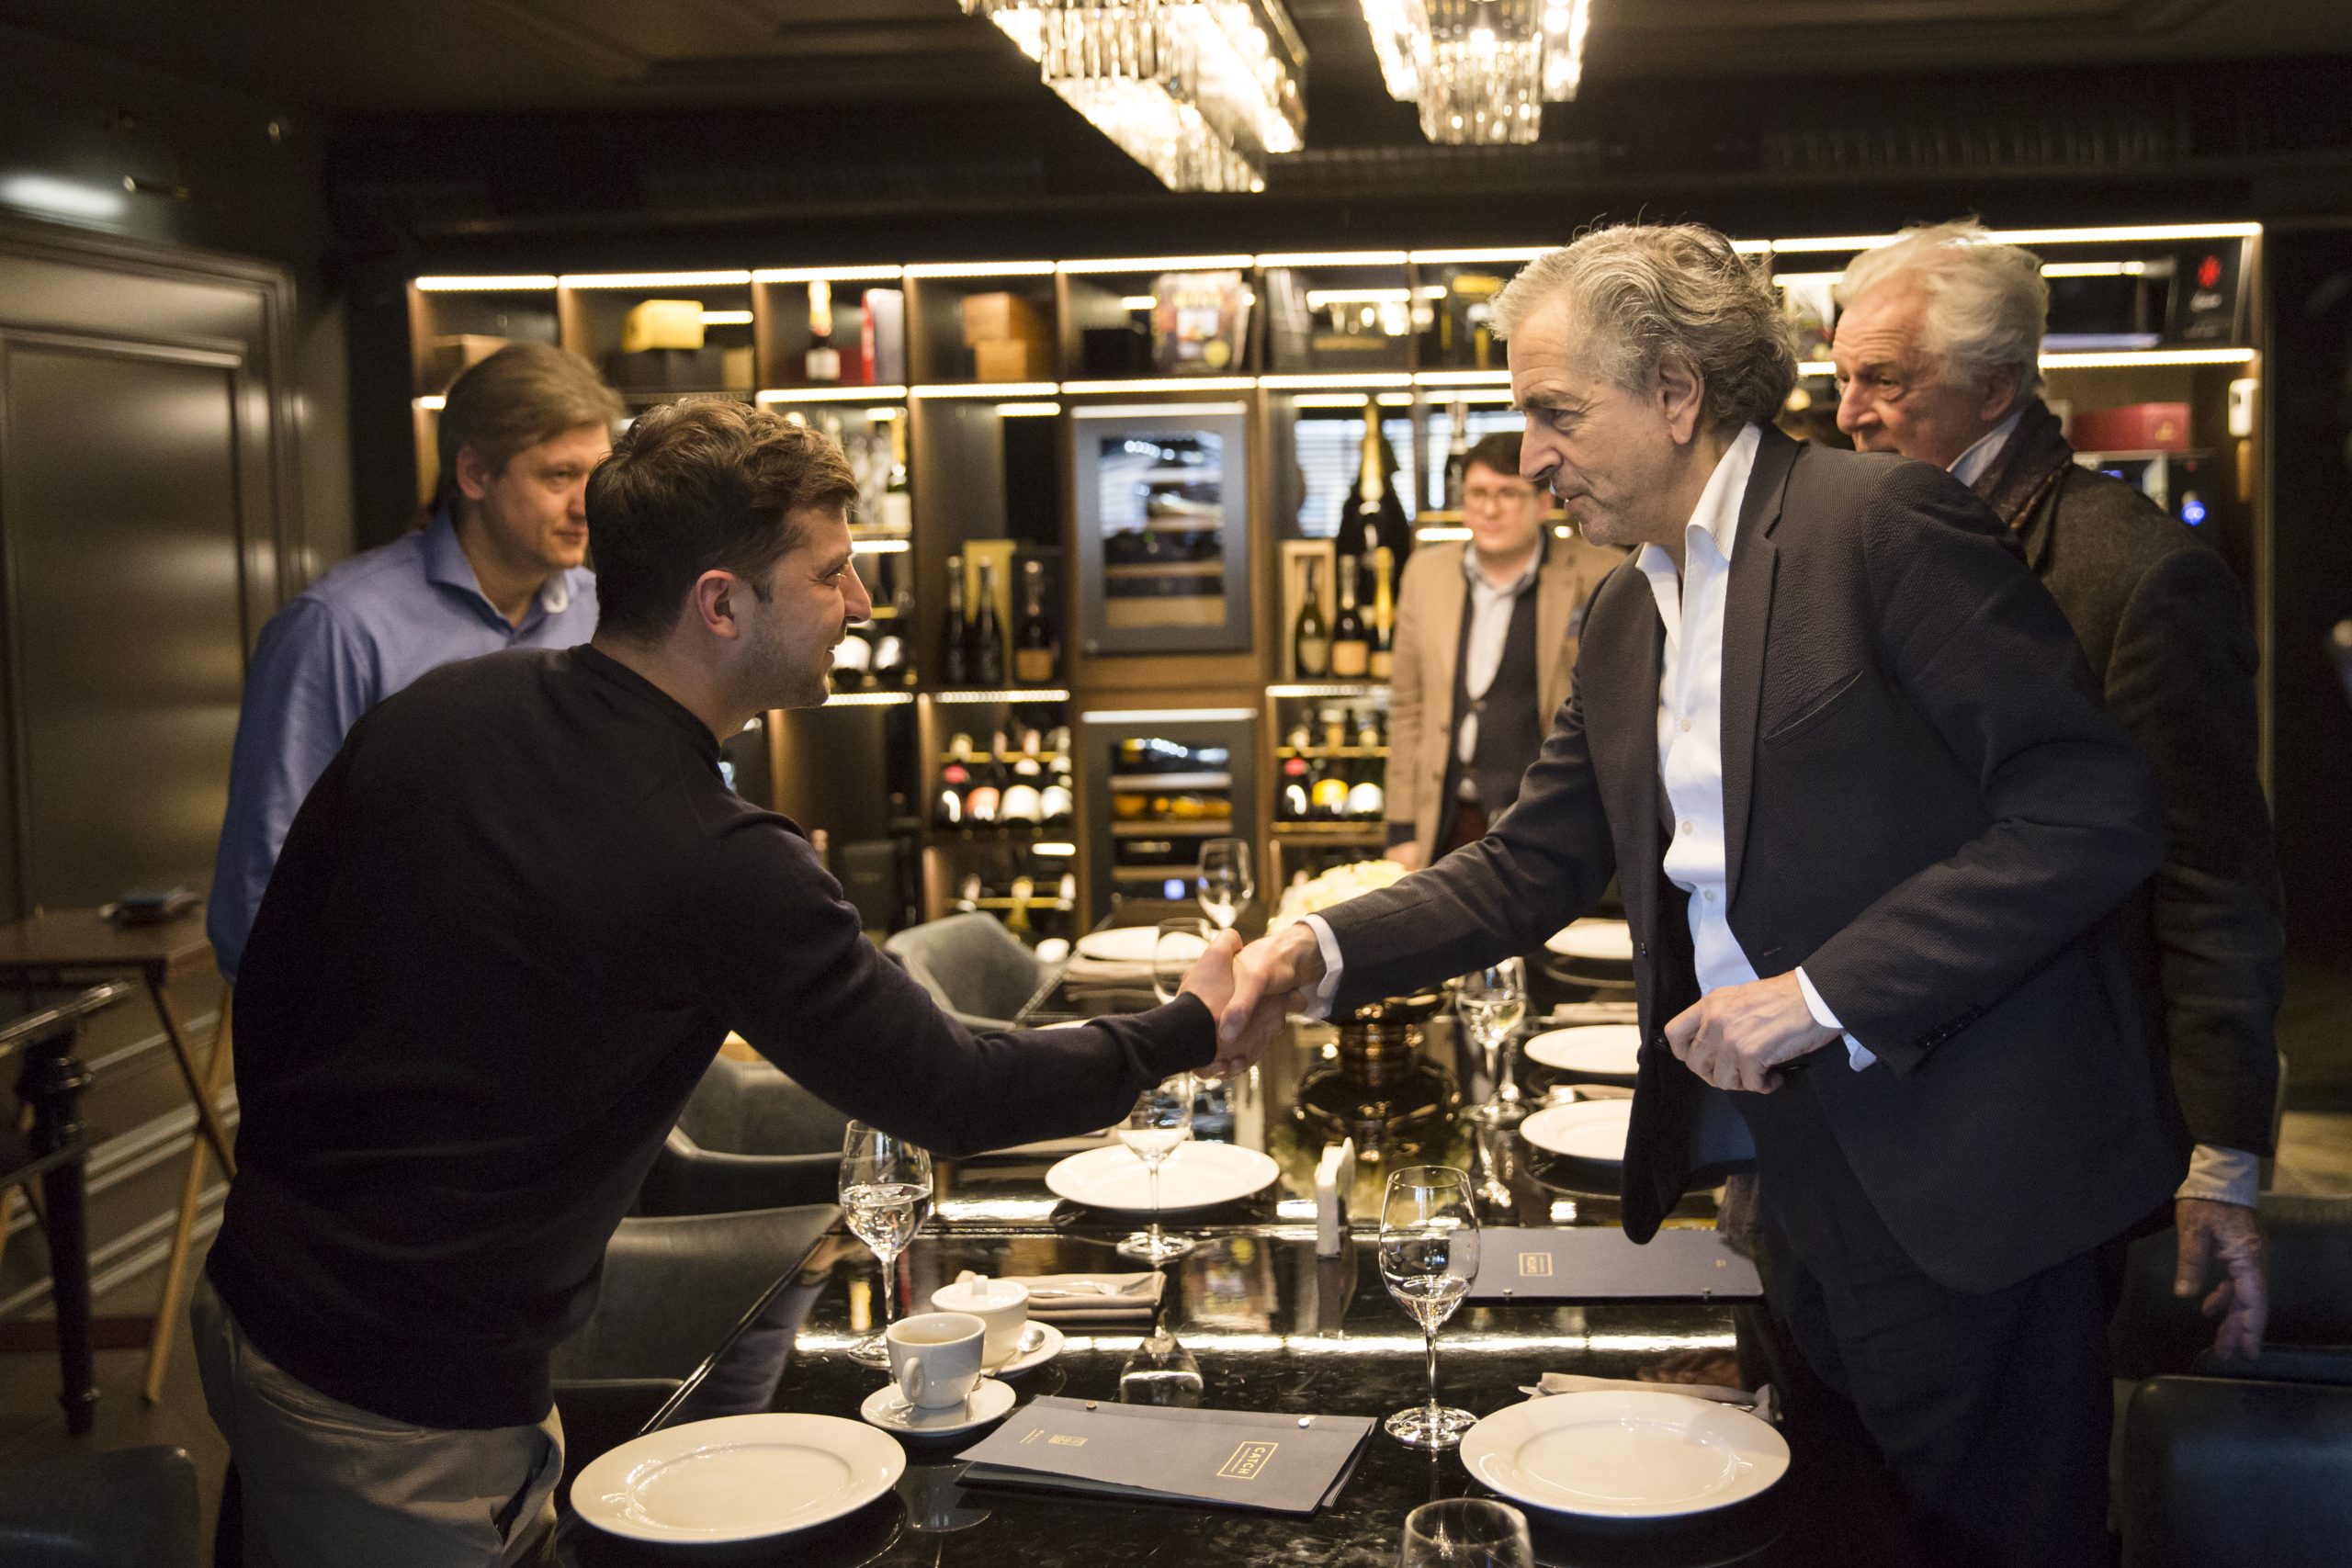 Rencontre entre Bernard-Henri Levy et Volodymyr Zelensky se serrent la main au dessus de la table d'un restaurant.